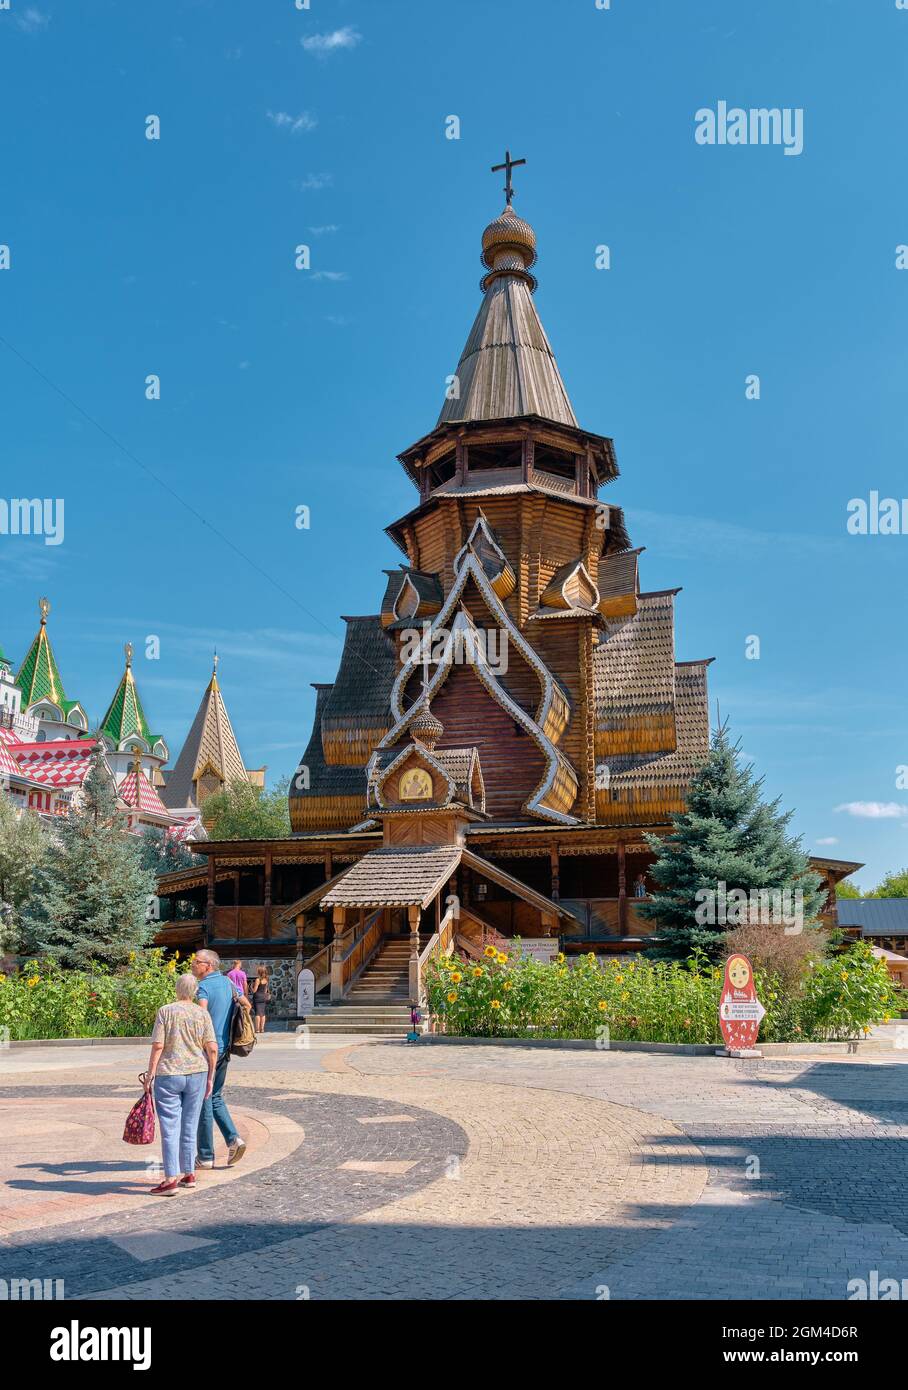 Vista de la iglesia de tiendas de madera de San Nicolás en el Kremlin de Izmailovsky, construido en 2003, punto de referencia: Moscú, Rusia - 15 de agosto de 2021 Foto de stock